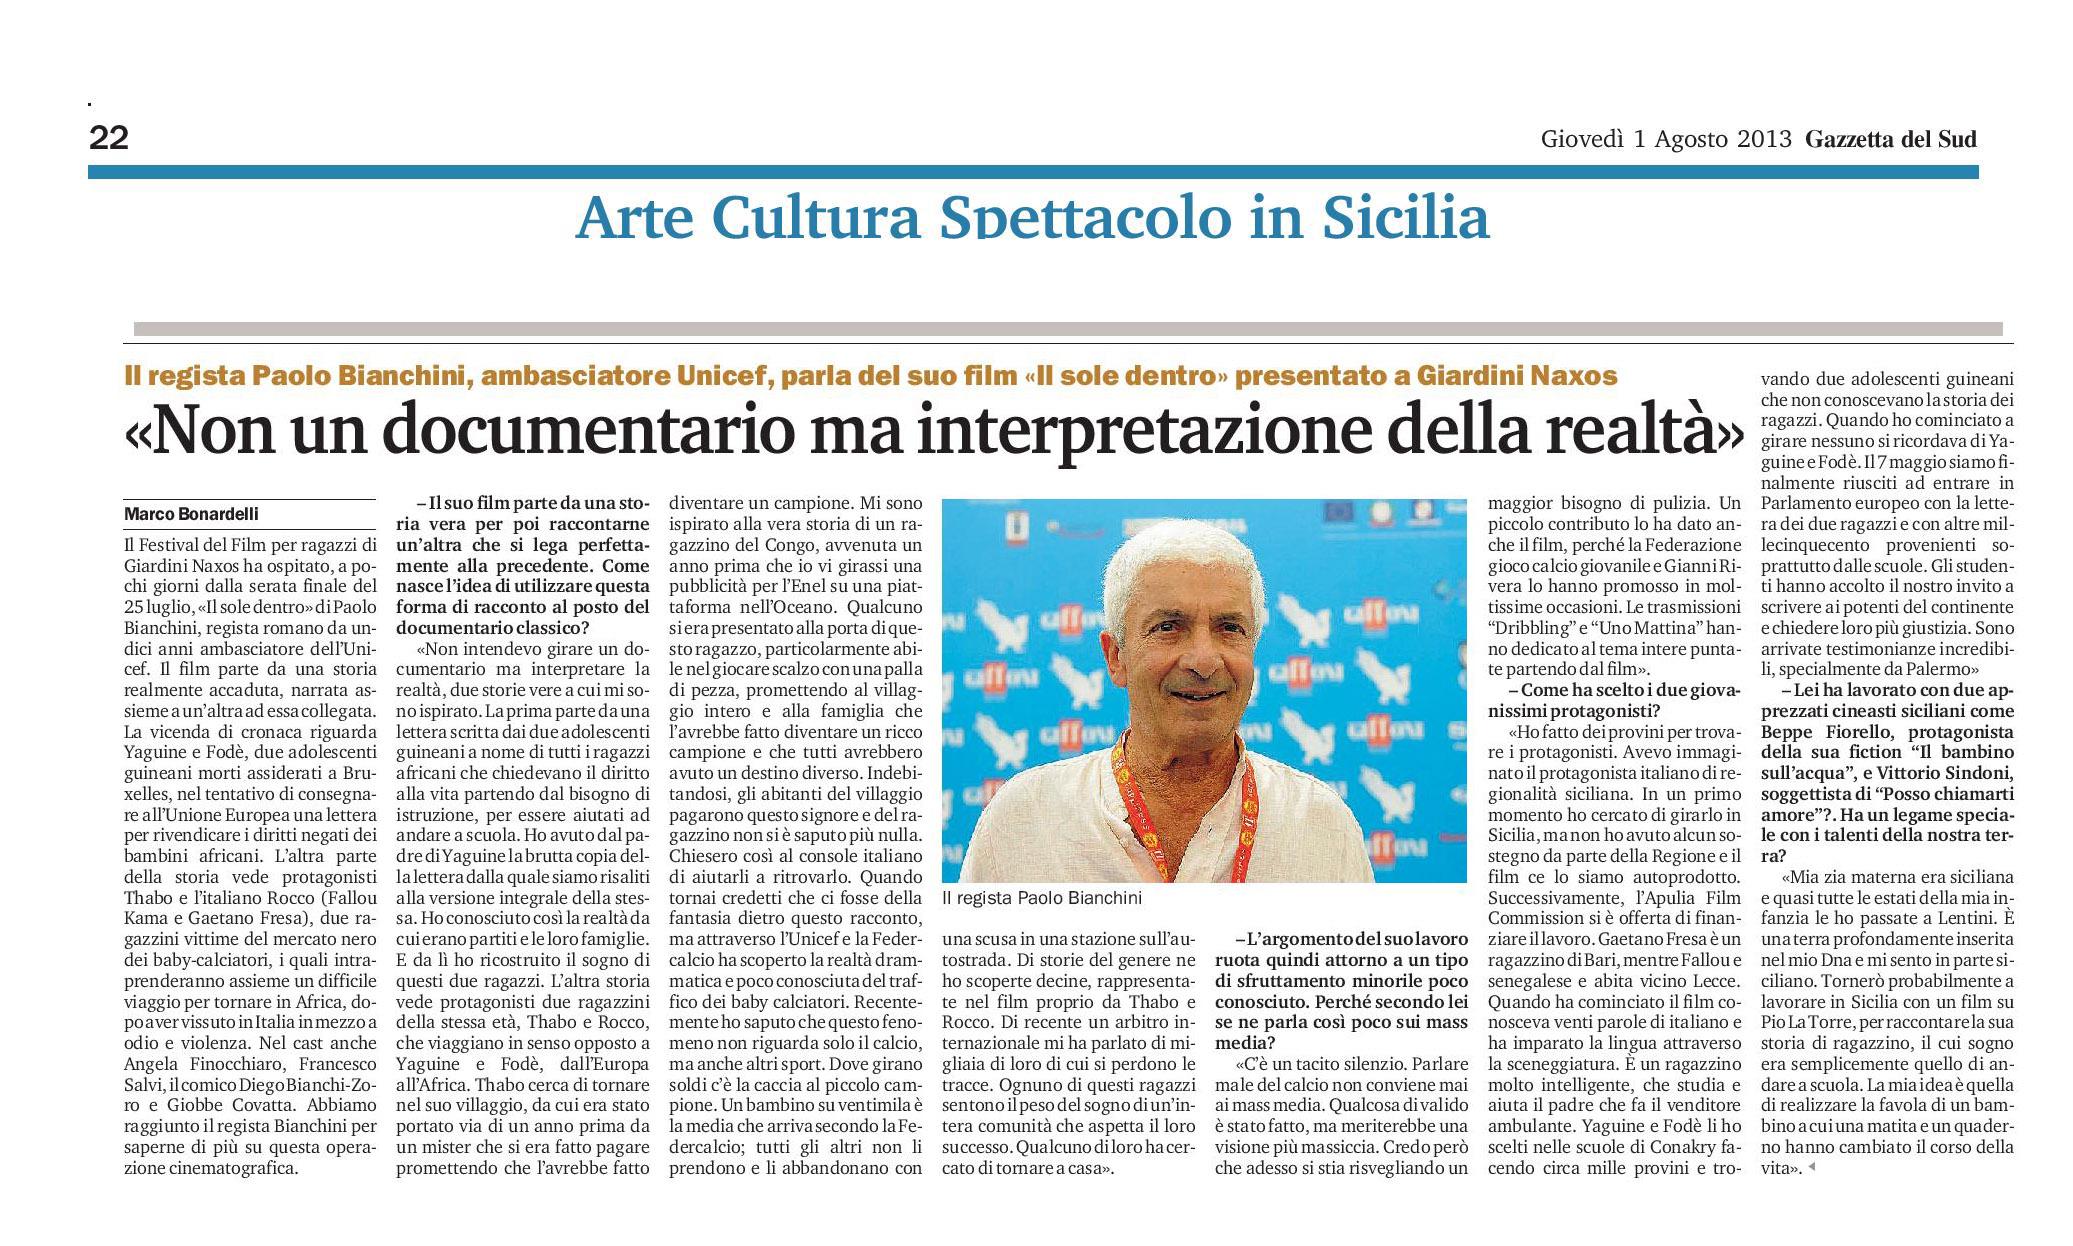 26 - Paolo Bianchini - Non un documentario ma interpretazione della realtà - Gazzetta del Sud - 1 agosto 2013.jpg